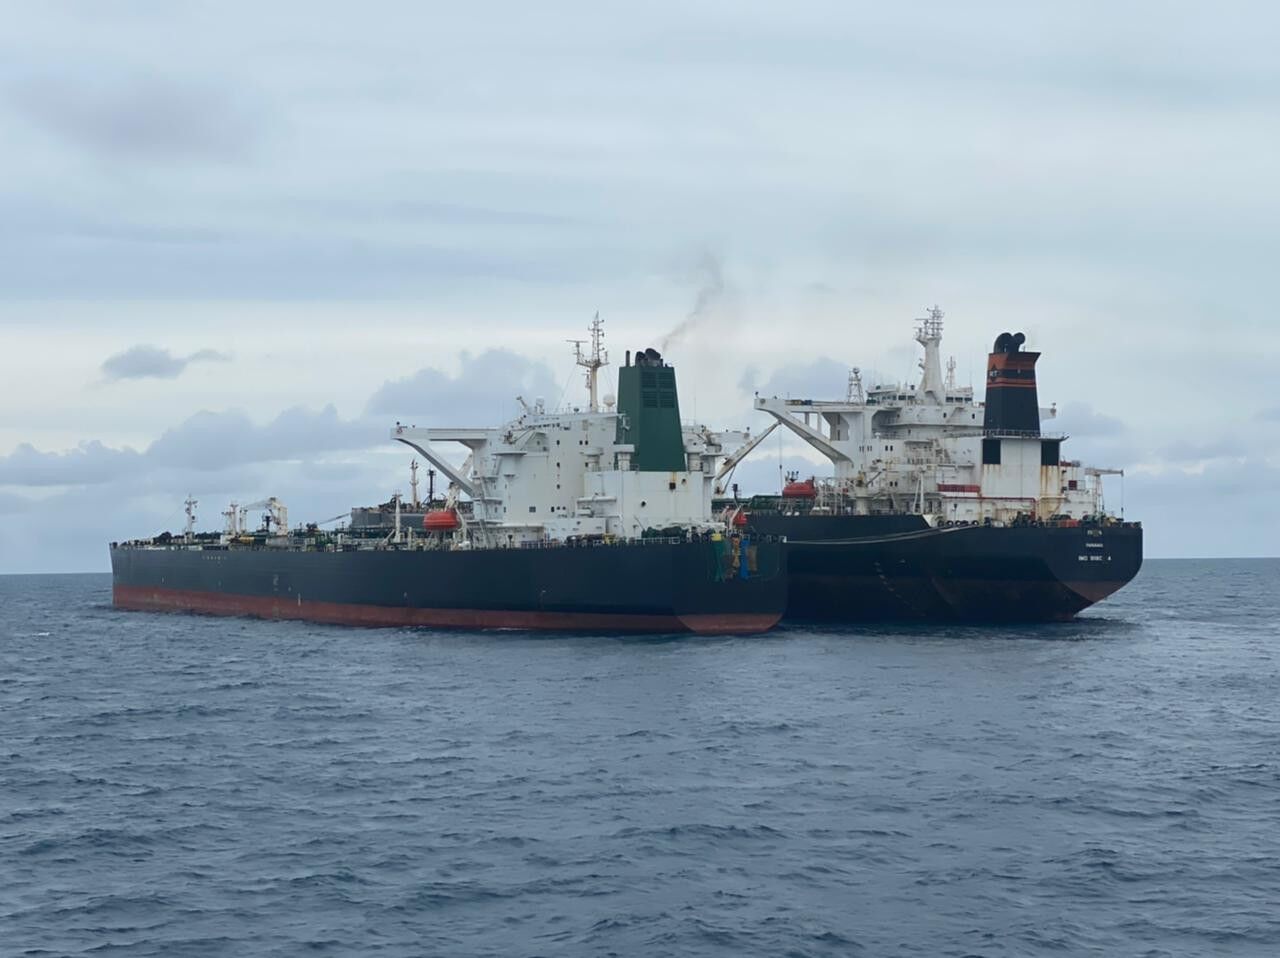 اندونزی نفتکش ایرانی هورس را پس از ۴ ماه رفع توقیف کرد